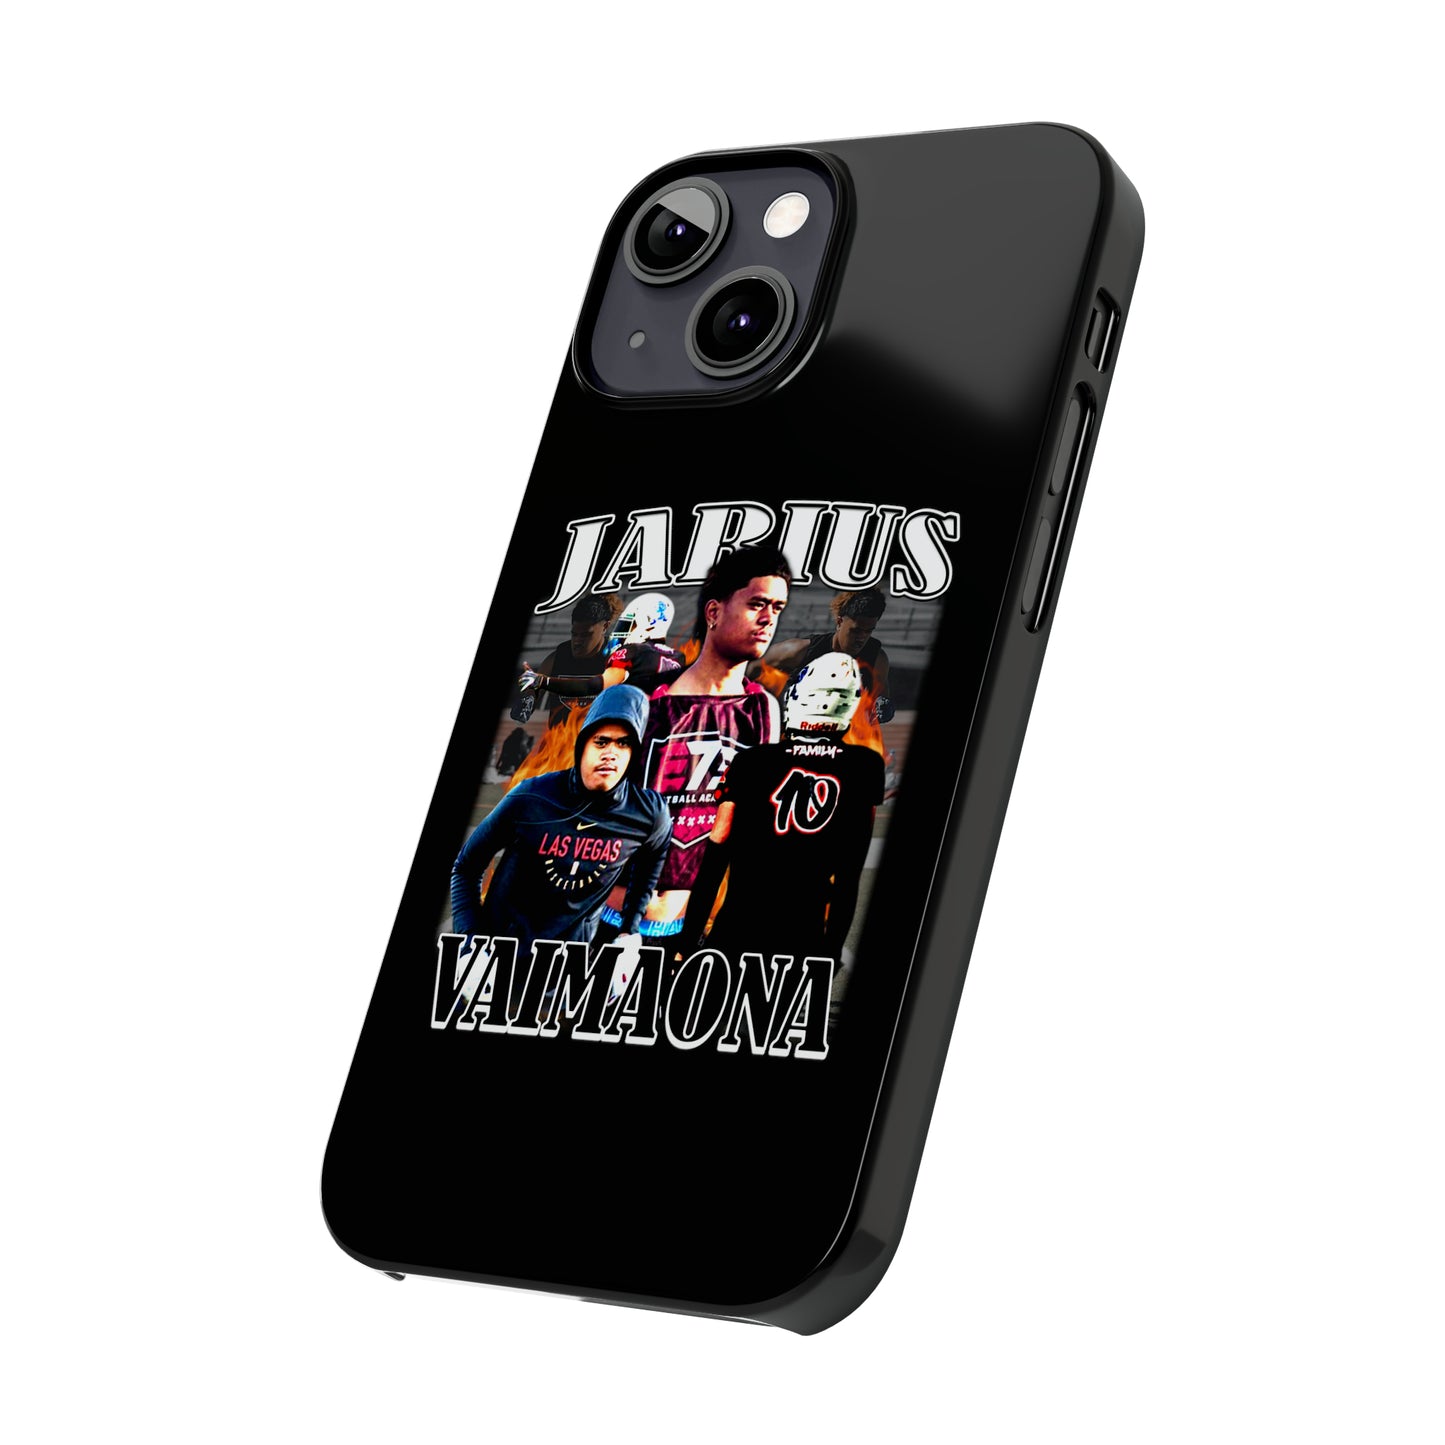 Jarius Vaimaona Slim Phone Cases